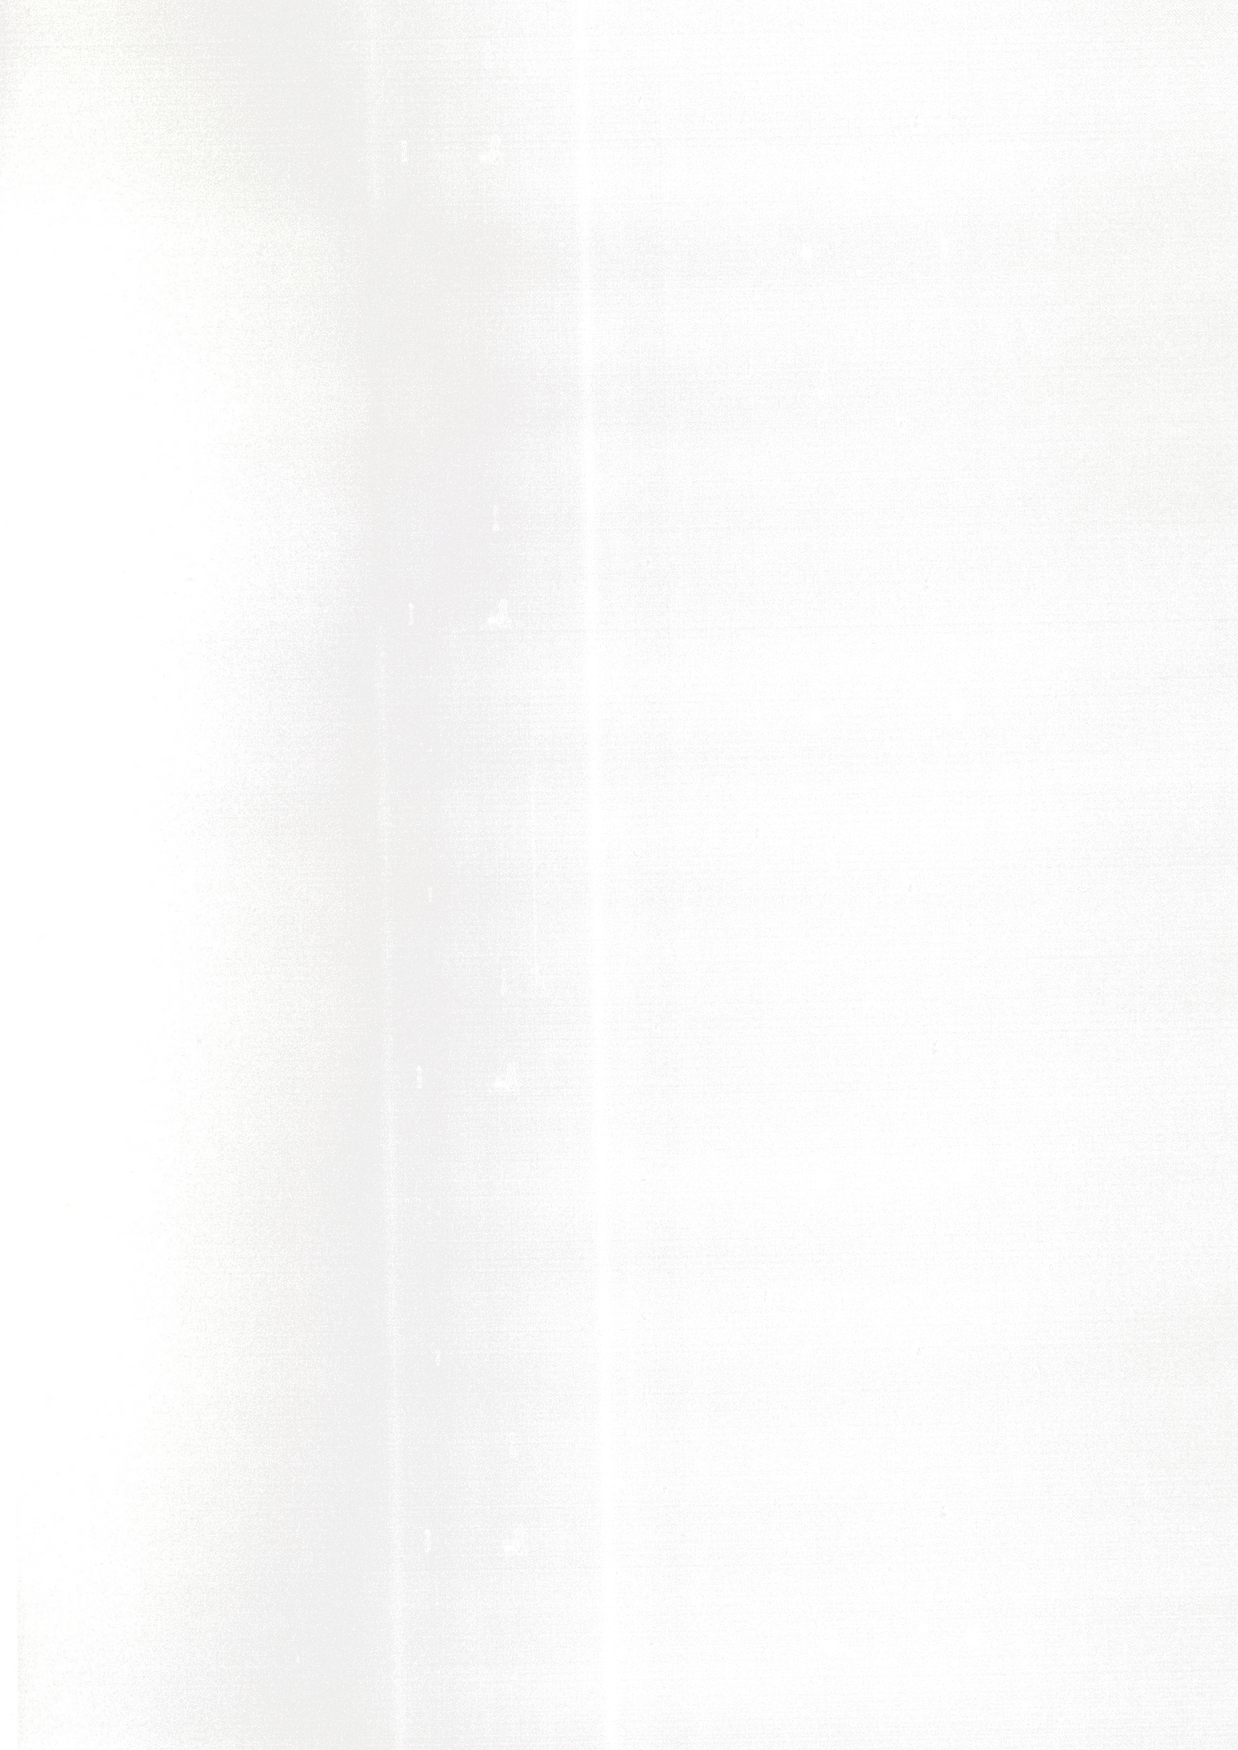 Photocopy Scan Overlay Texture